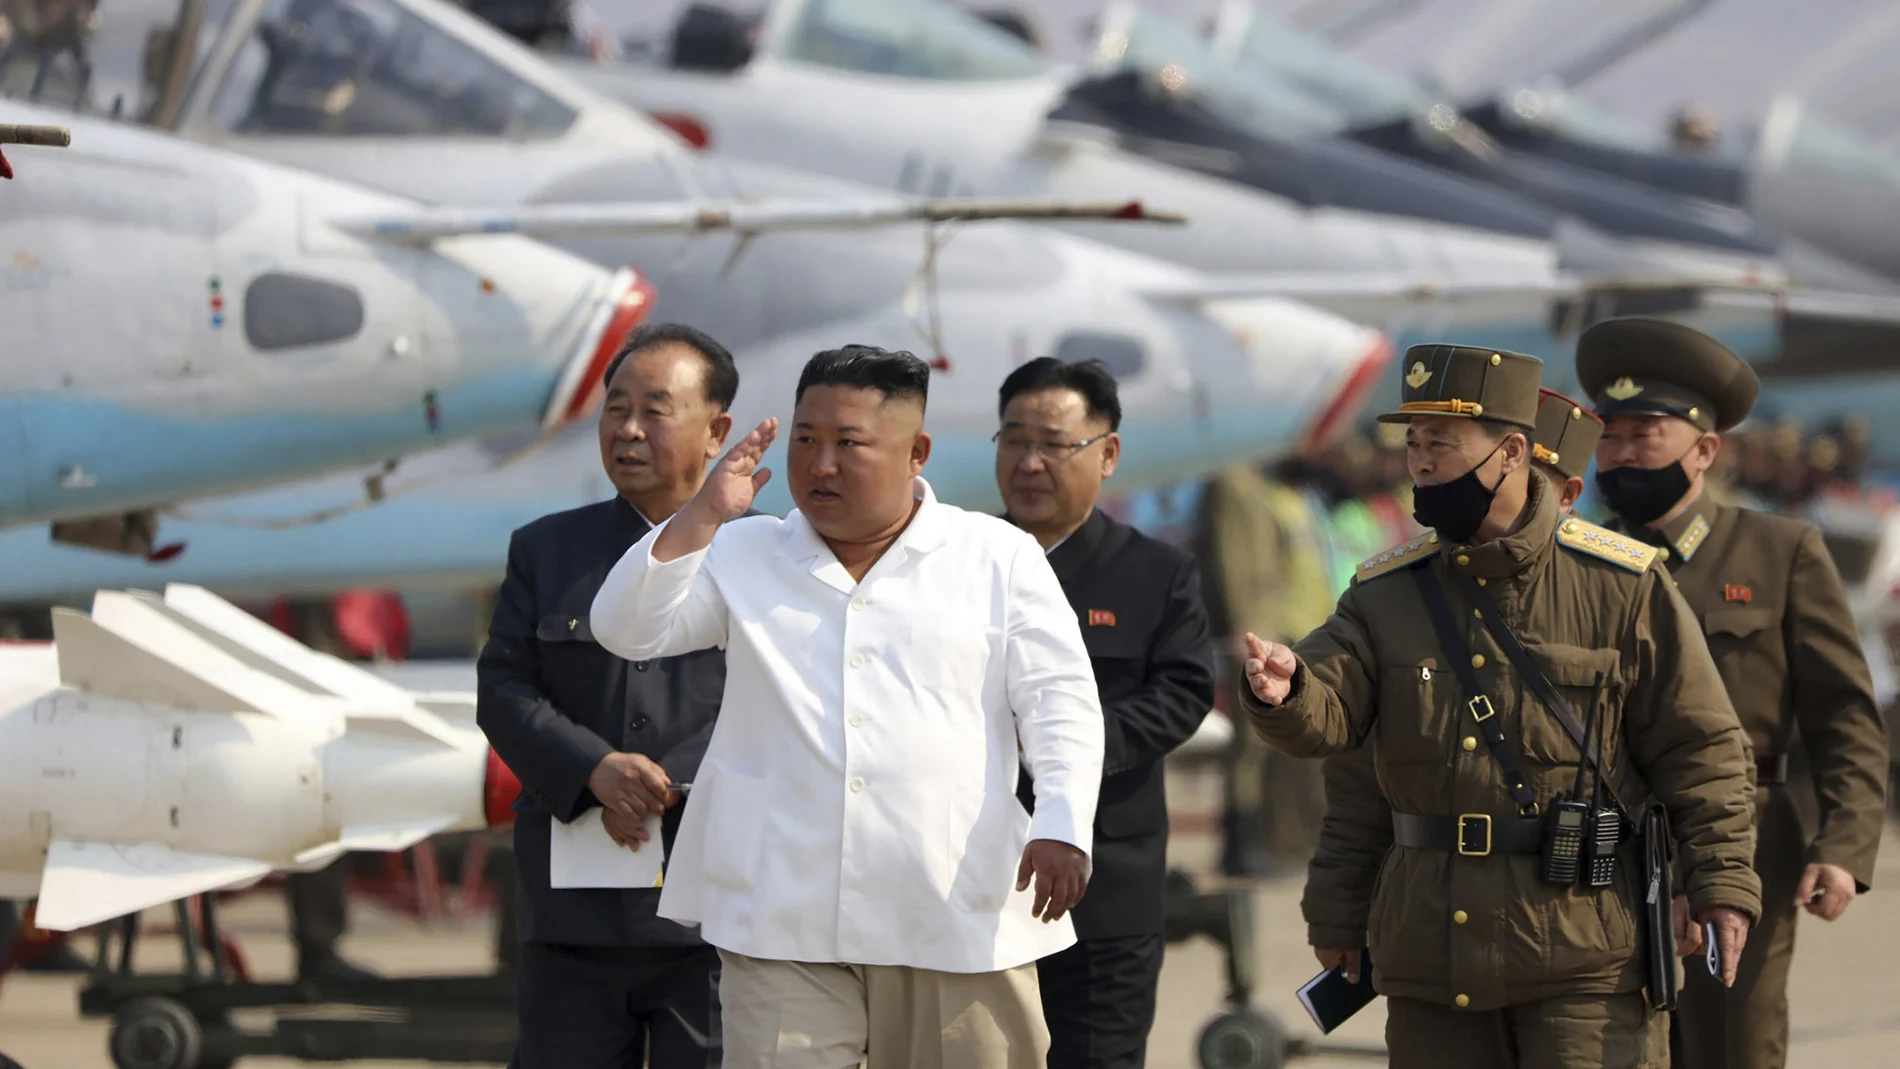 Imagen de Kim Jong Un facilitada por el régimen norcoreano el pasado 12 de abril